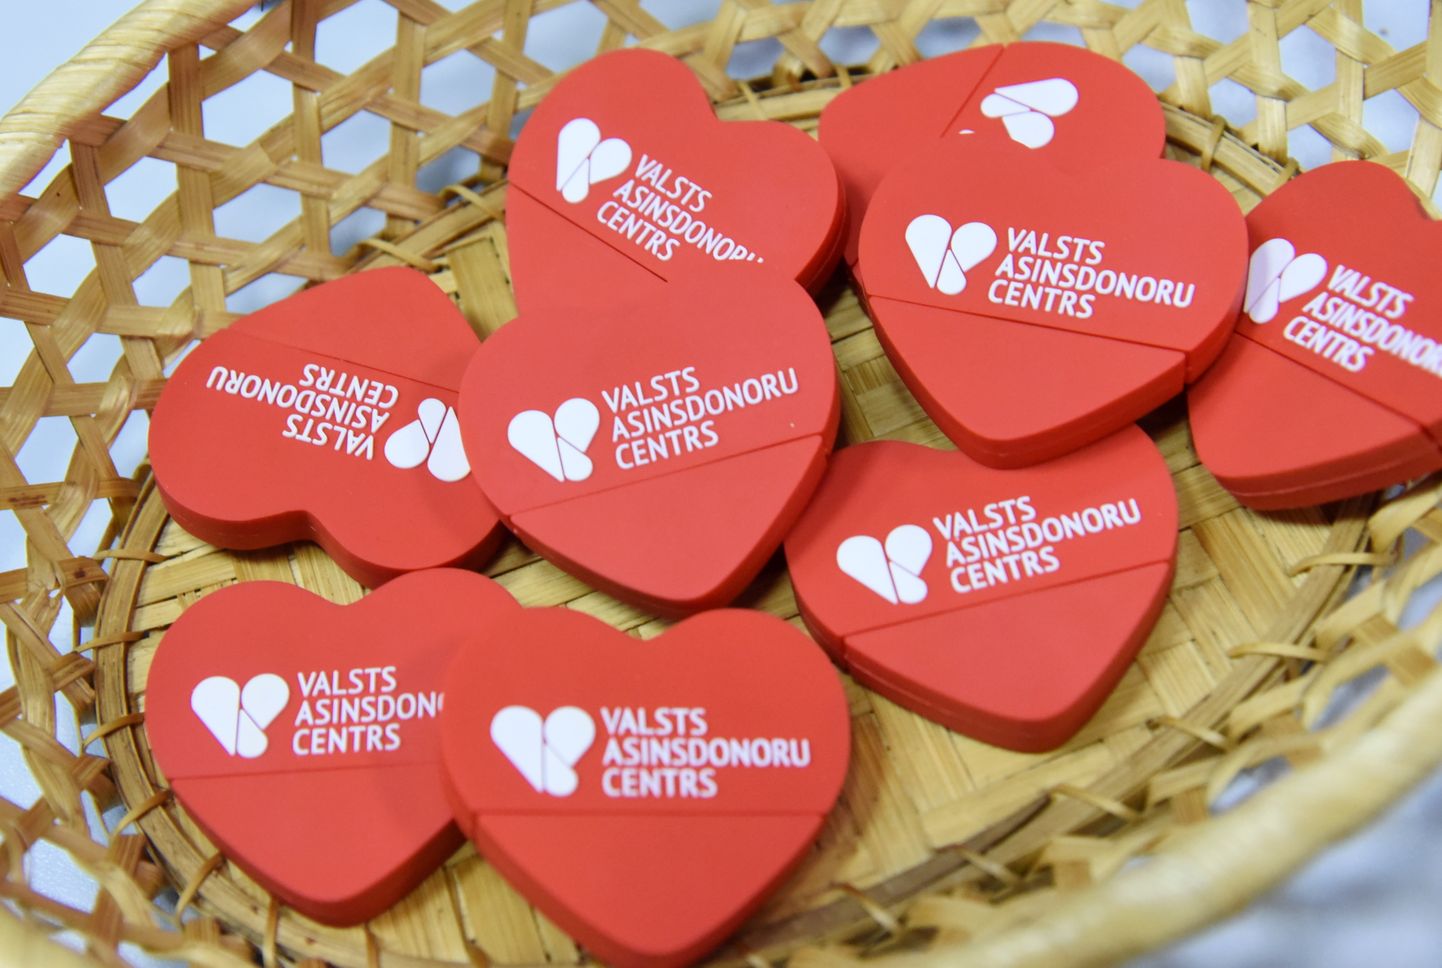 Merķeļa ielā 11 atklāta Valsts asinsdonoru centra stacionārās Donoru pieņemšanas vieta, kur turpmāk katru darba dienu pilsētas centrā nodrošinās asins donoru pieņemšanu.